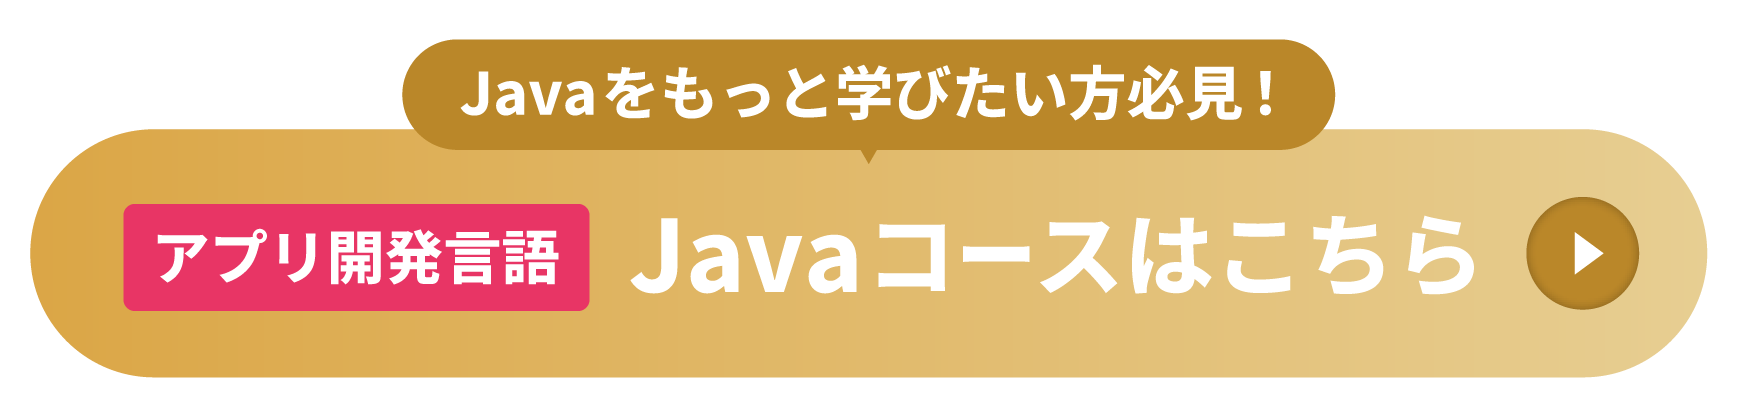 Javaコースはこちら